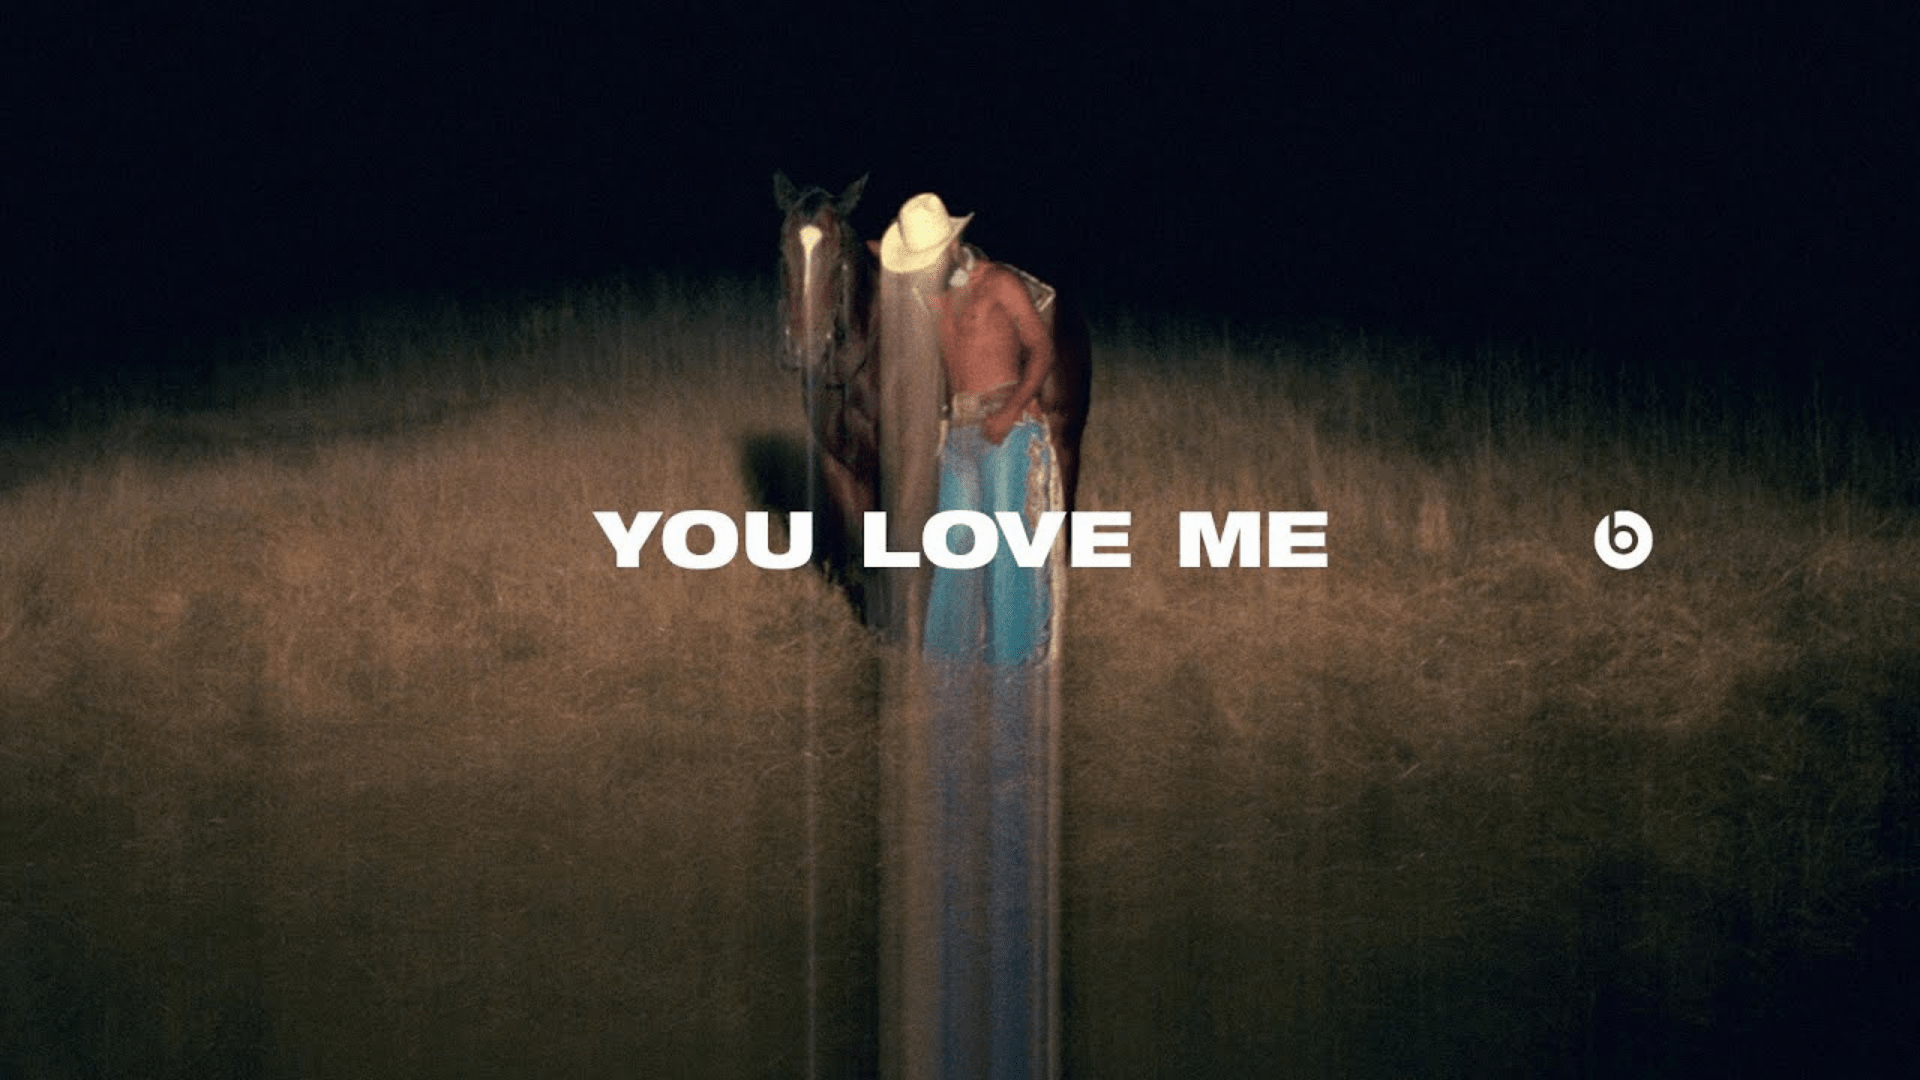 DGA 2021 - Melina Matsoukas (Prettybird) - You Love Me, Beats By Dr. Dre